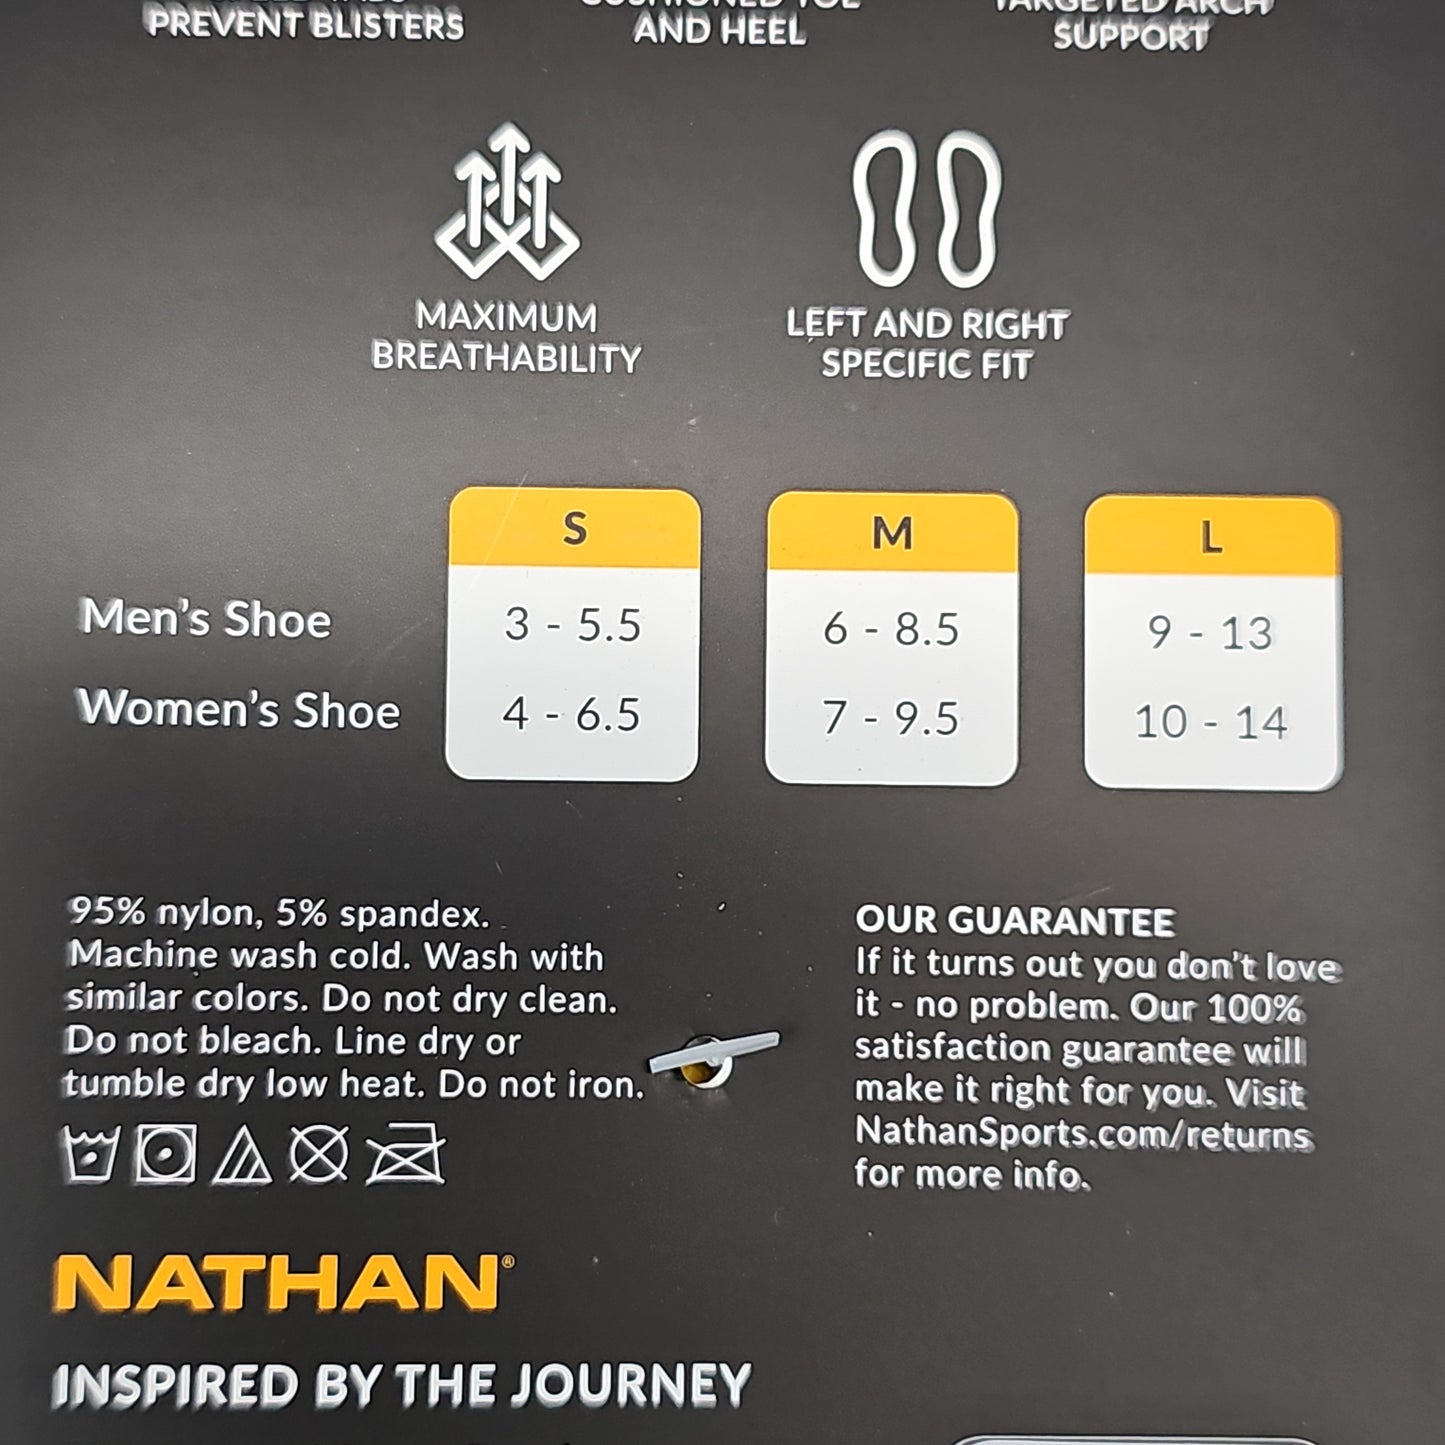 NATHAN Speed Tab Low Cut Socks Unisex Sz L White NS10580-90002-L (New)